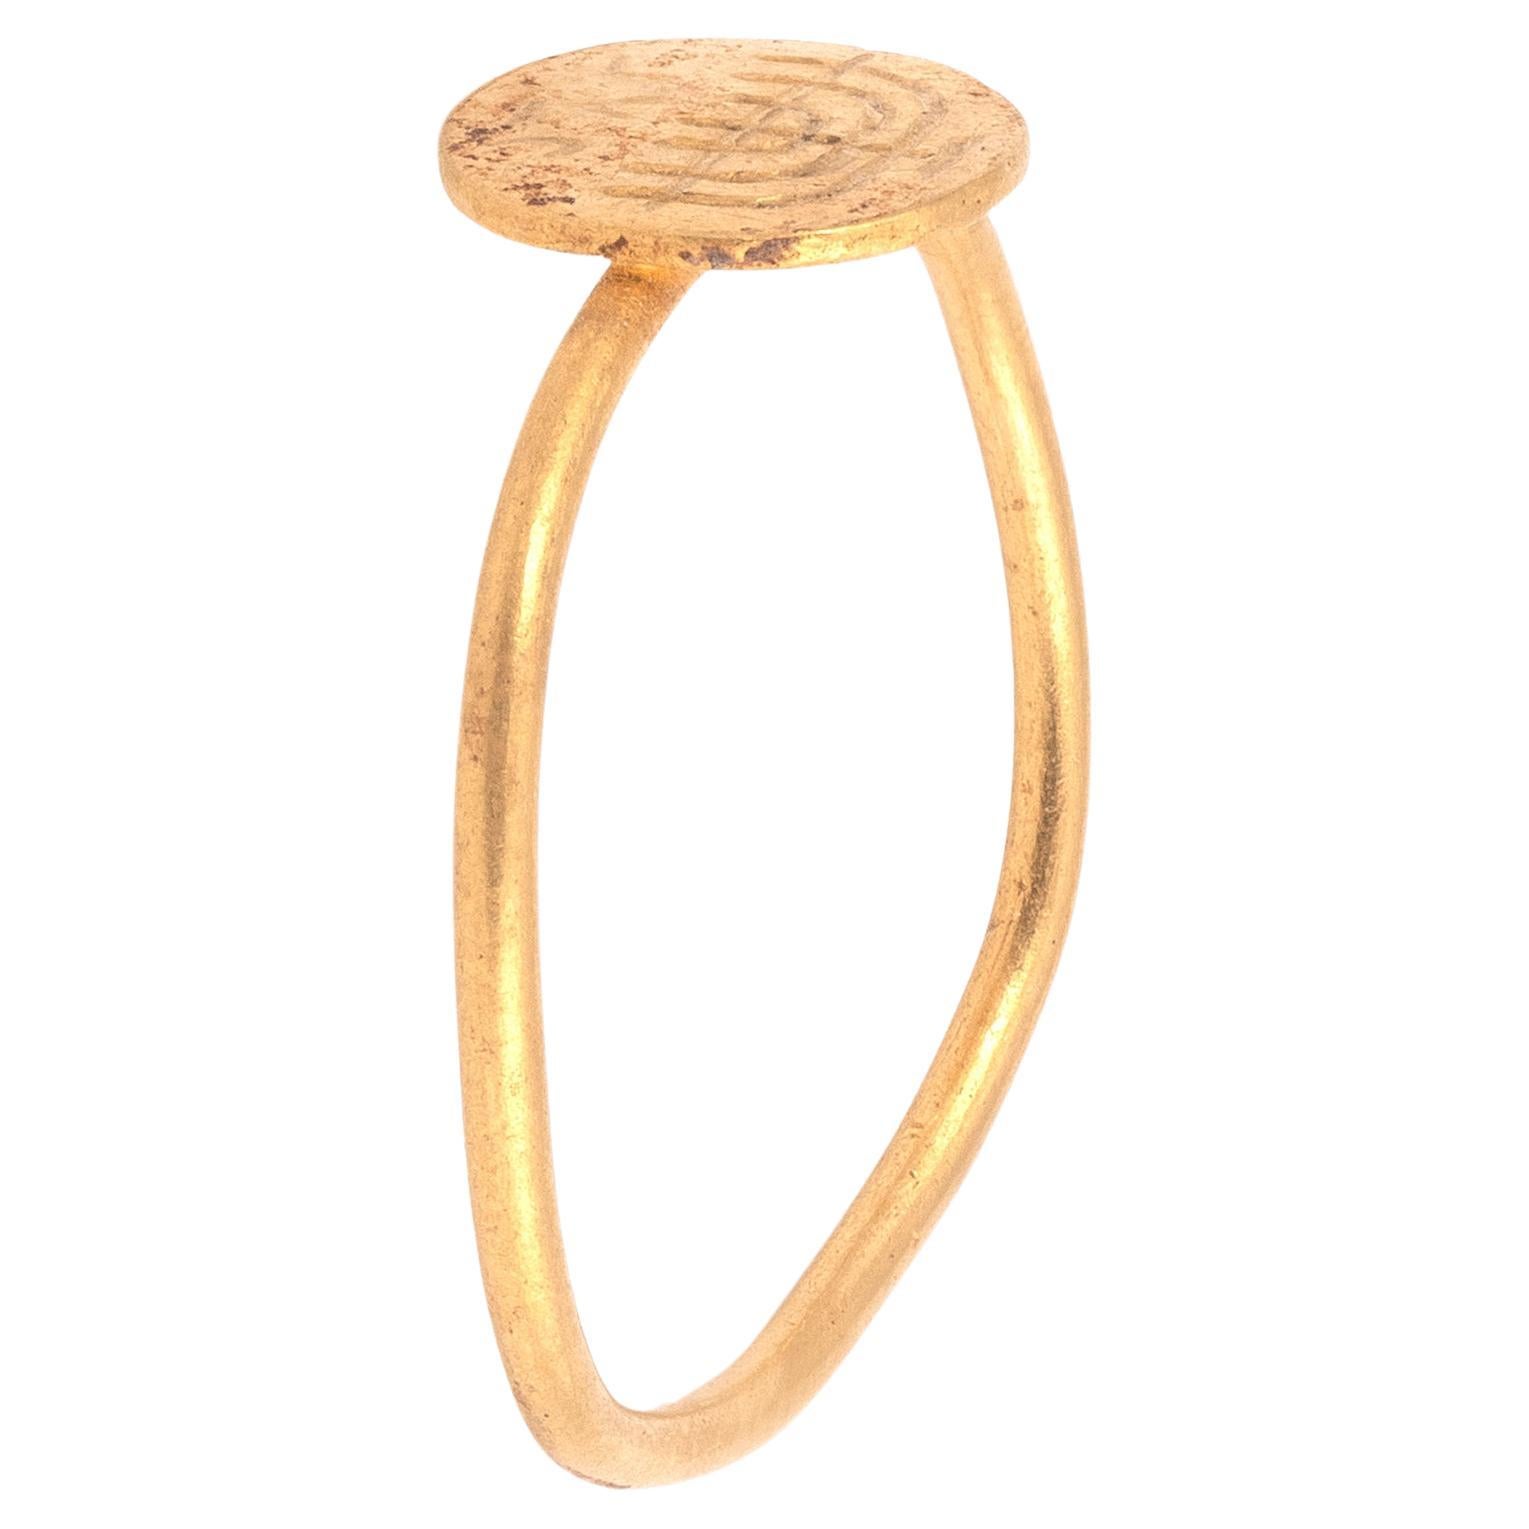 Ein byzantinischer Goldring mit einer jüdischen Menora und einer Inschrift. Ein typischer frühbyzantinischer Ring aus gelötetem Draht mit rundem Querschnitt und runder Lünette, graviert mit einem Kandelaber für sieben Lampen und drei